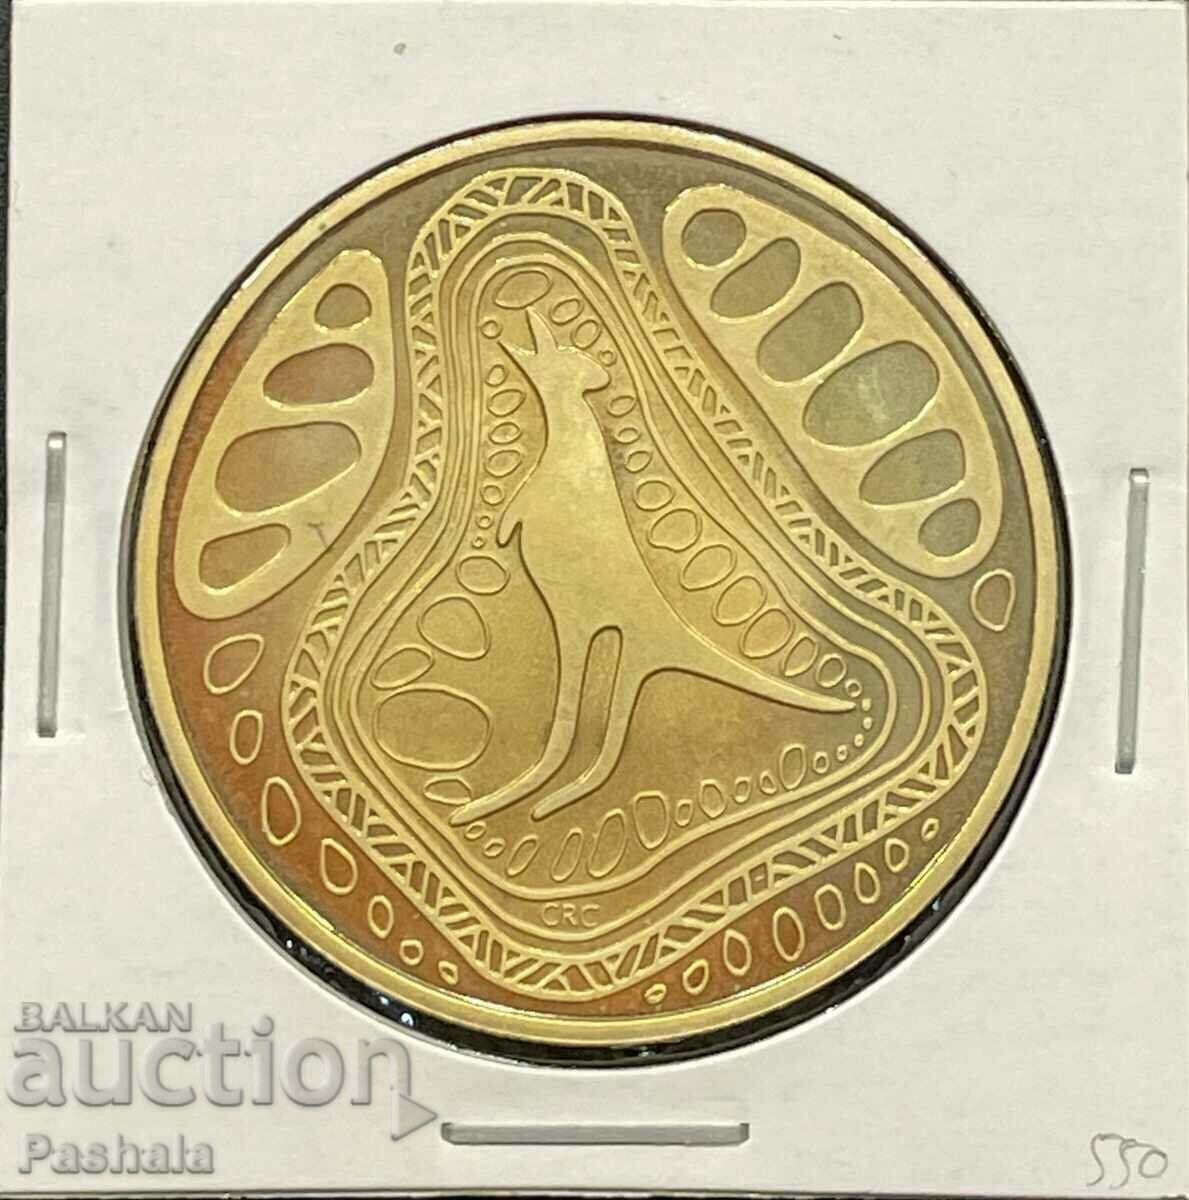 Αυστραλία $1 2005